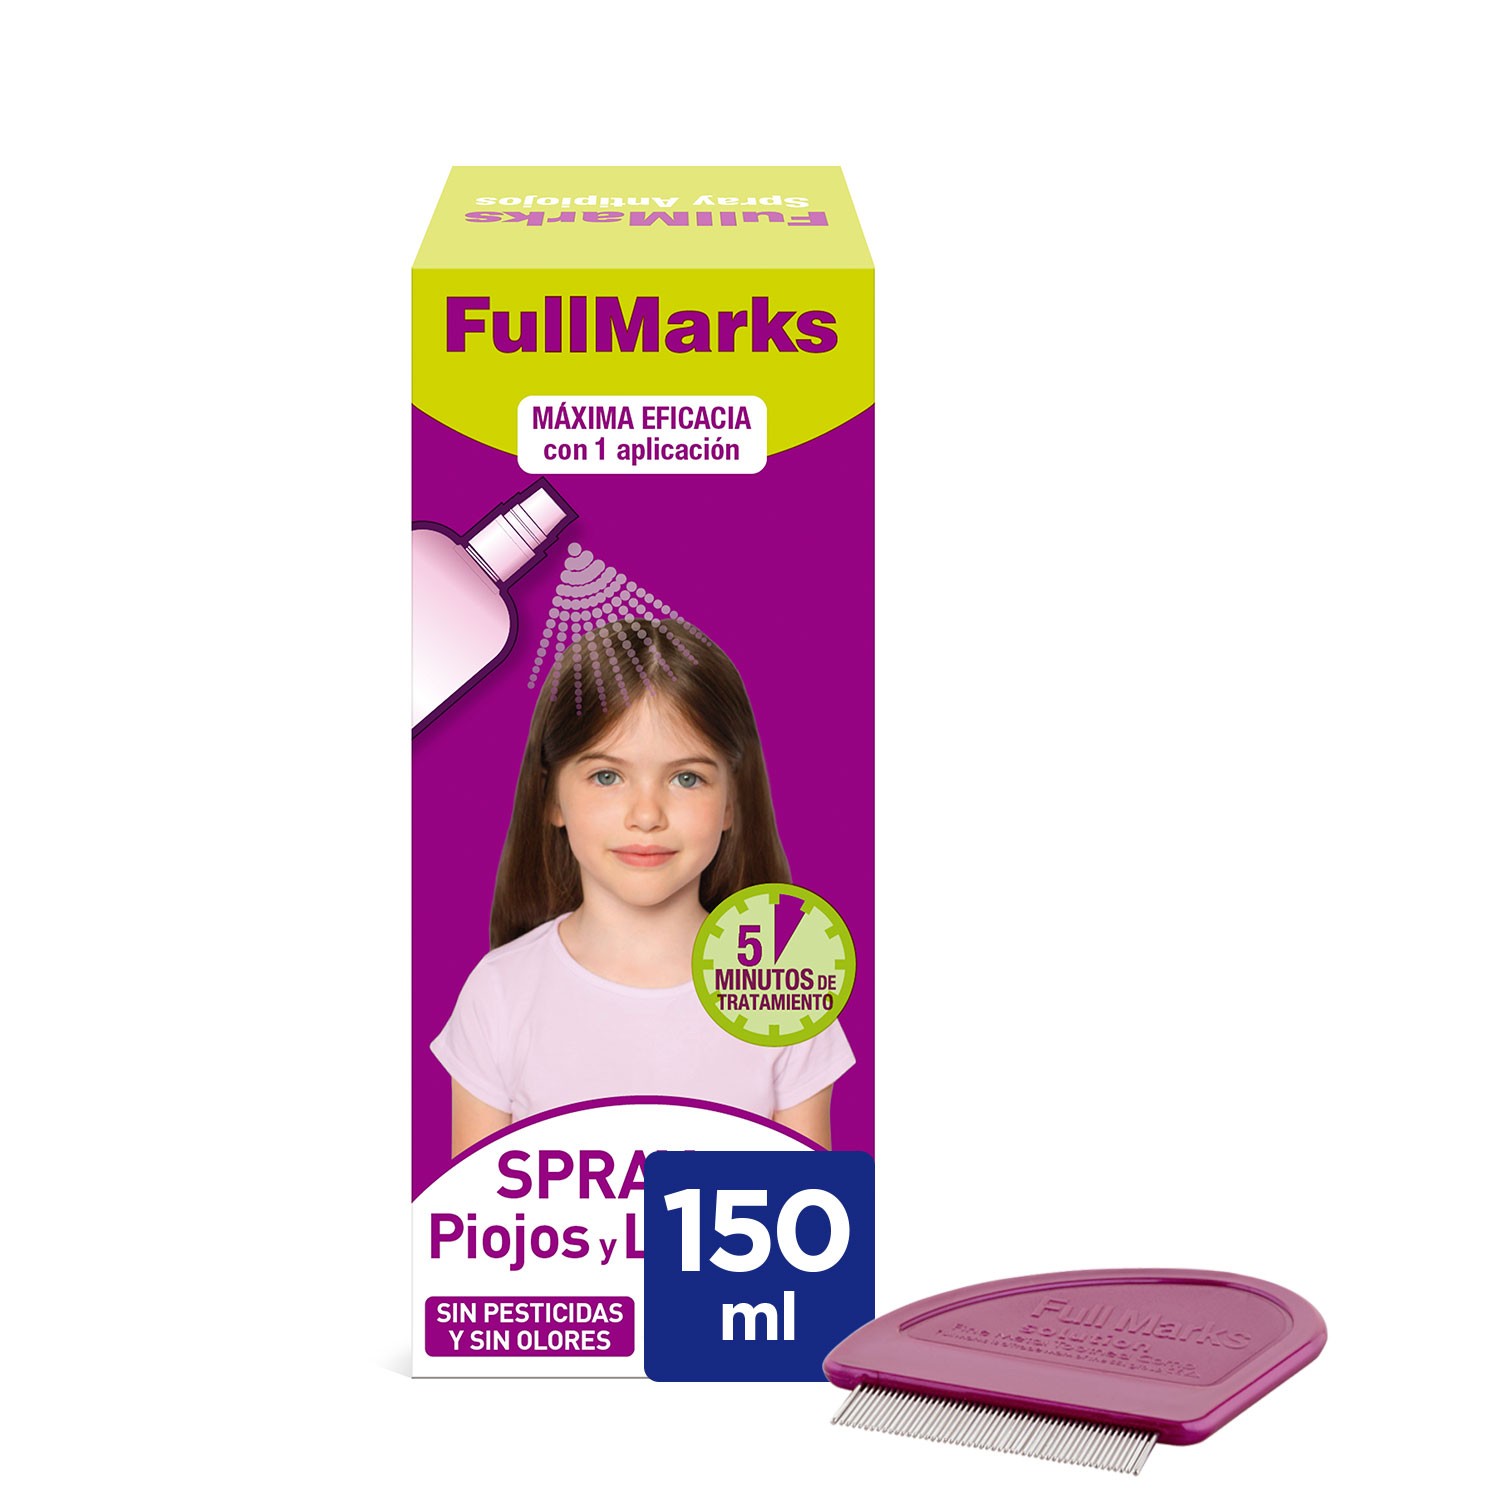 FullMarks Spray Anti-Poux 150 ml